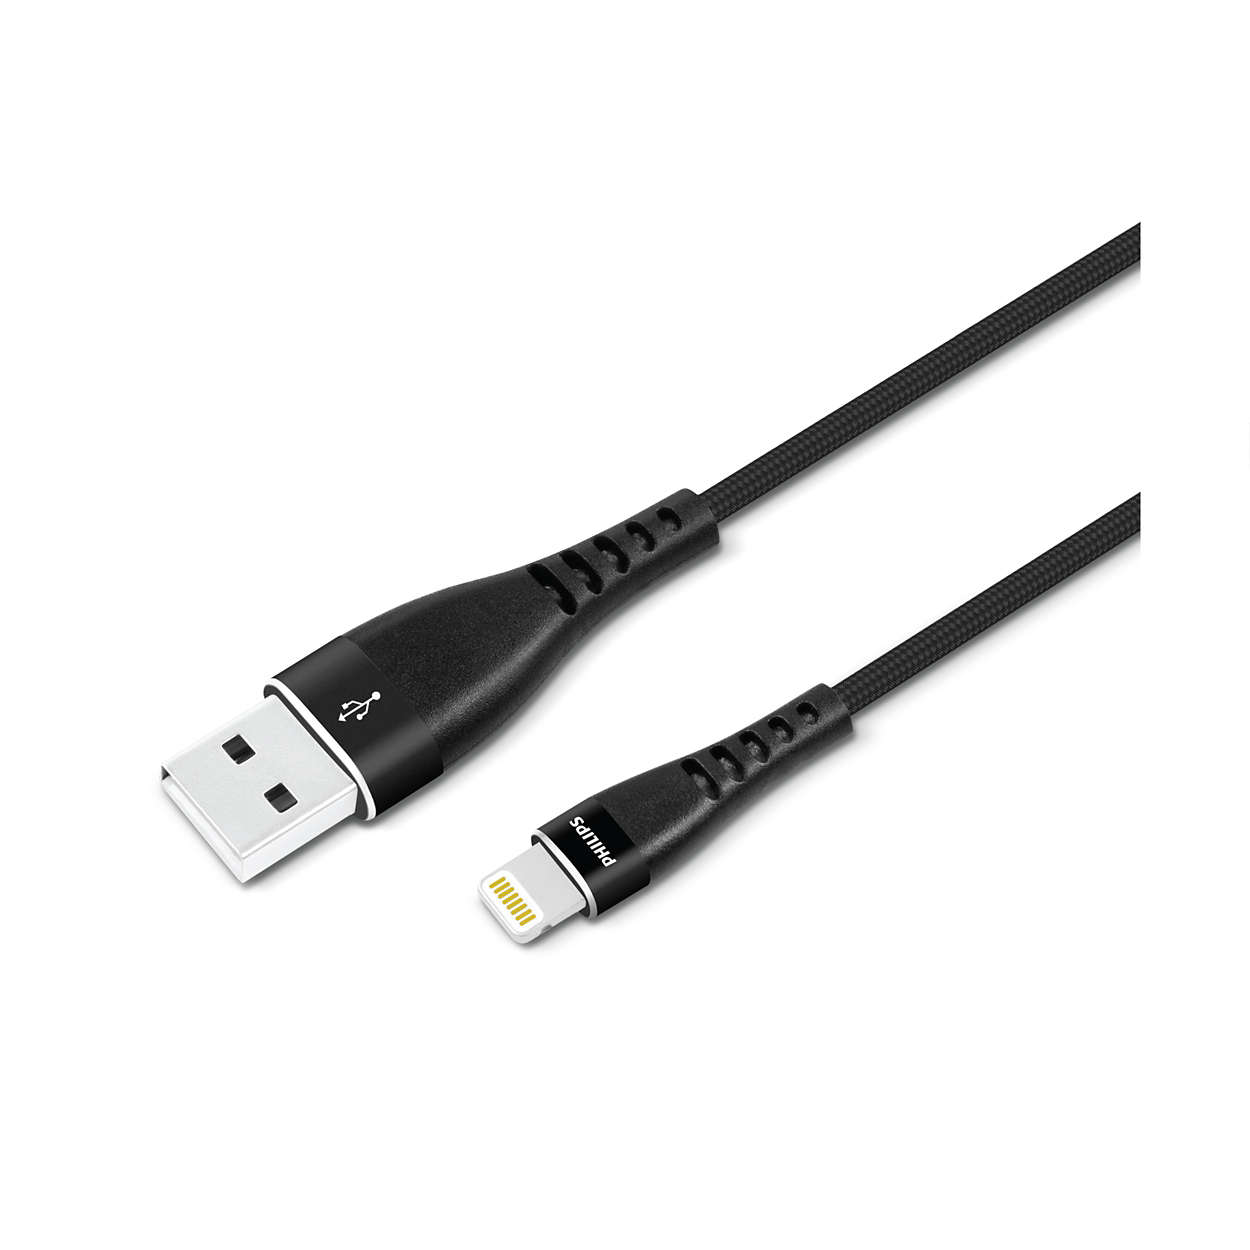 Prémiový kabel USB-A na Lightning s opletením